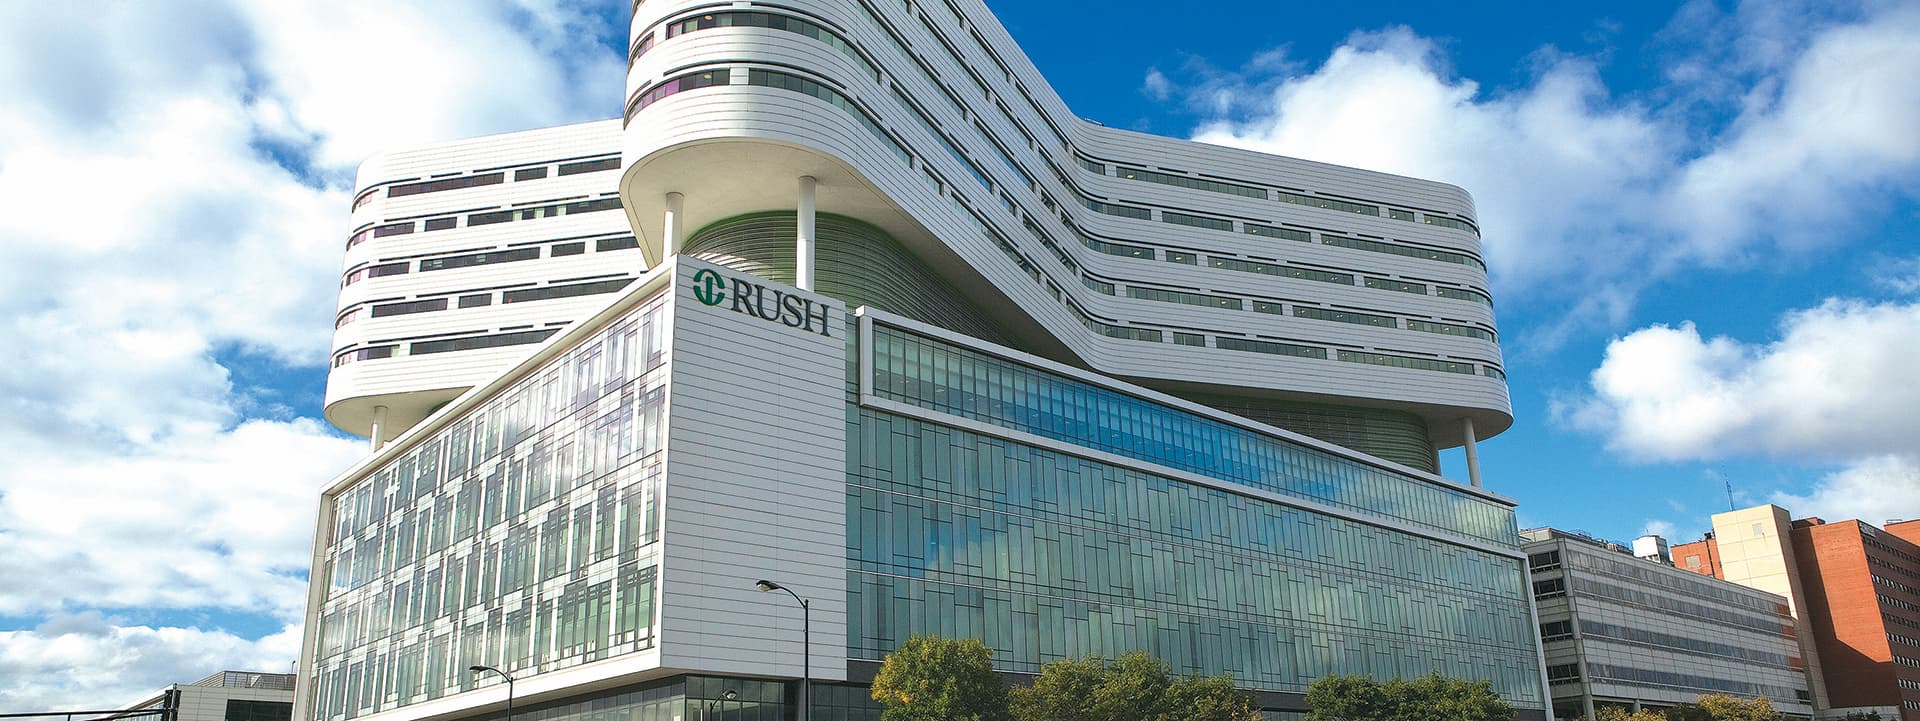 Rush University Medical Center tower